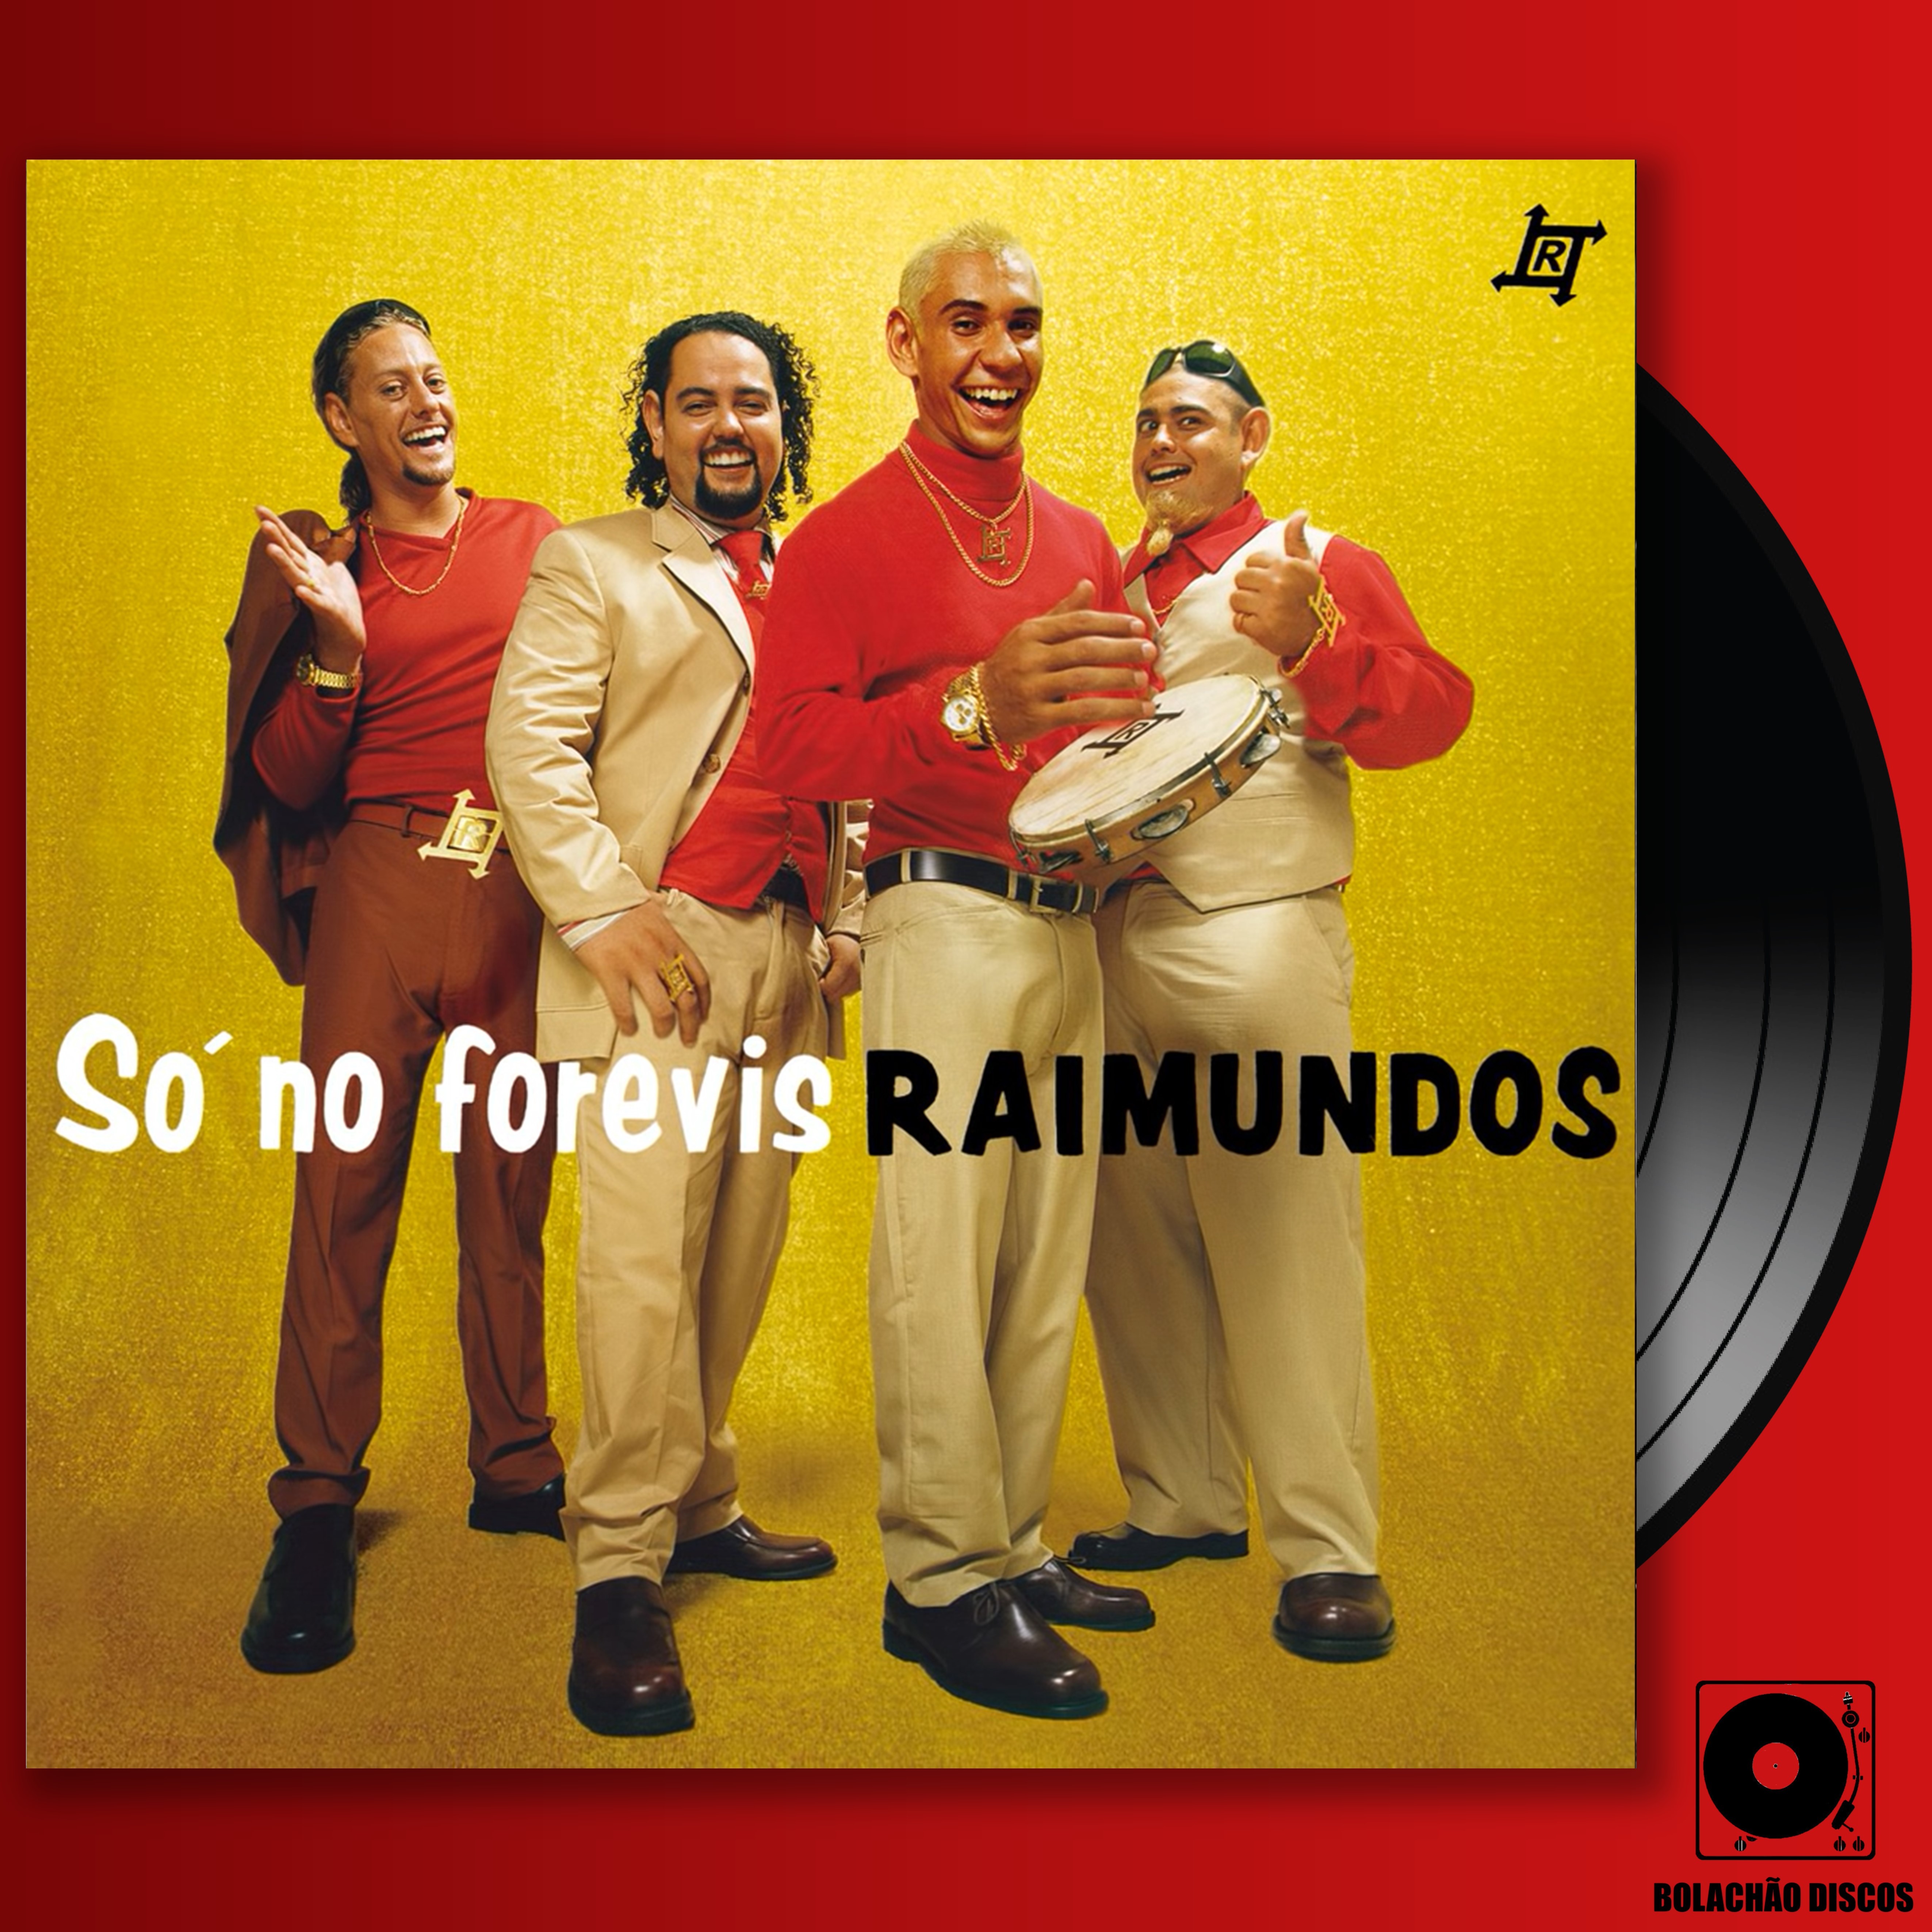 Imagem ilustrativa da edição em LP de 'Só no forevis', álbum clássico dos Raimundos